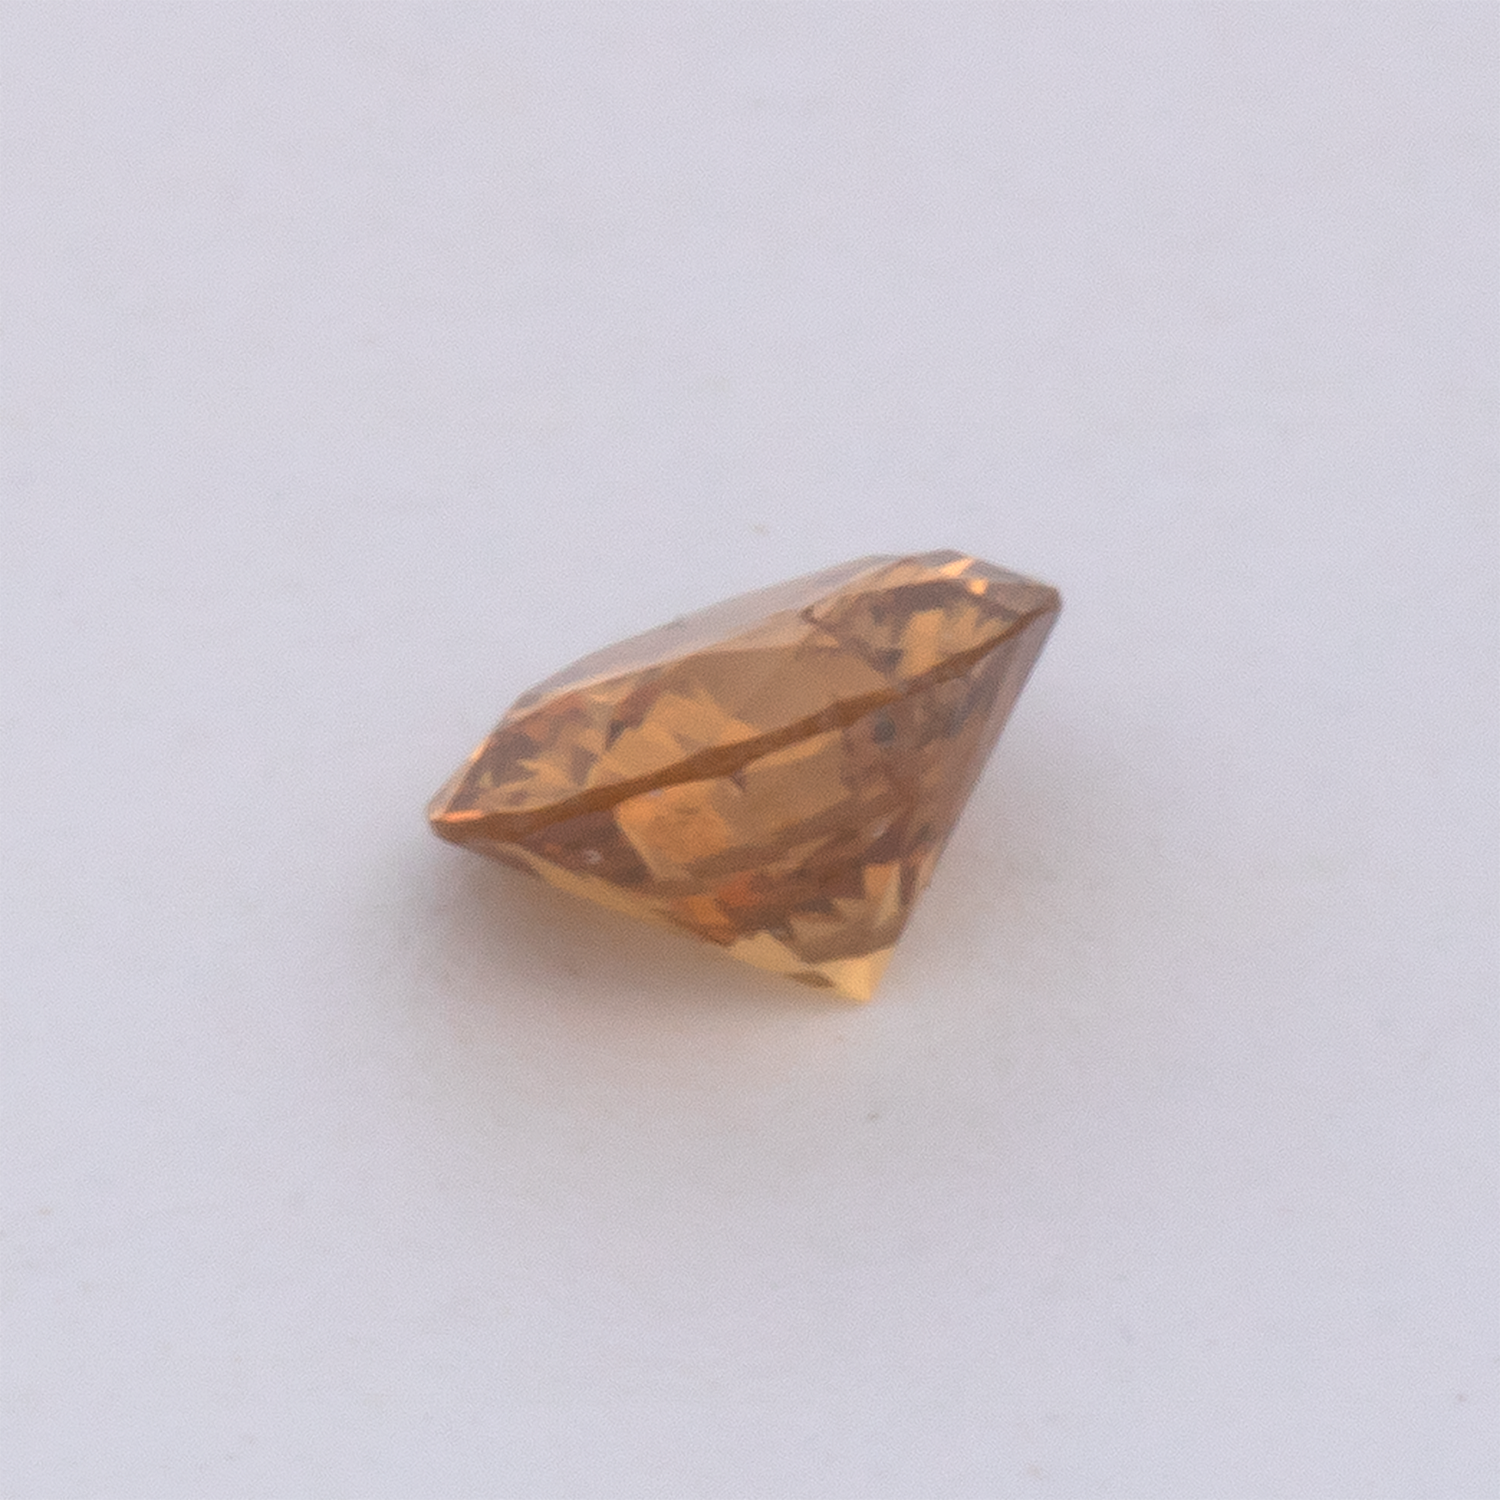 Diamant - braun & orange, rund, 3.6x3.6 mm, 0.17 cts, Nr. DT1026